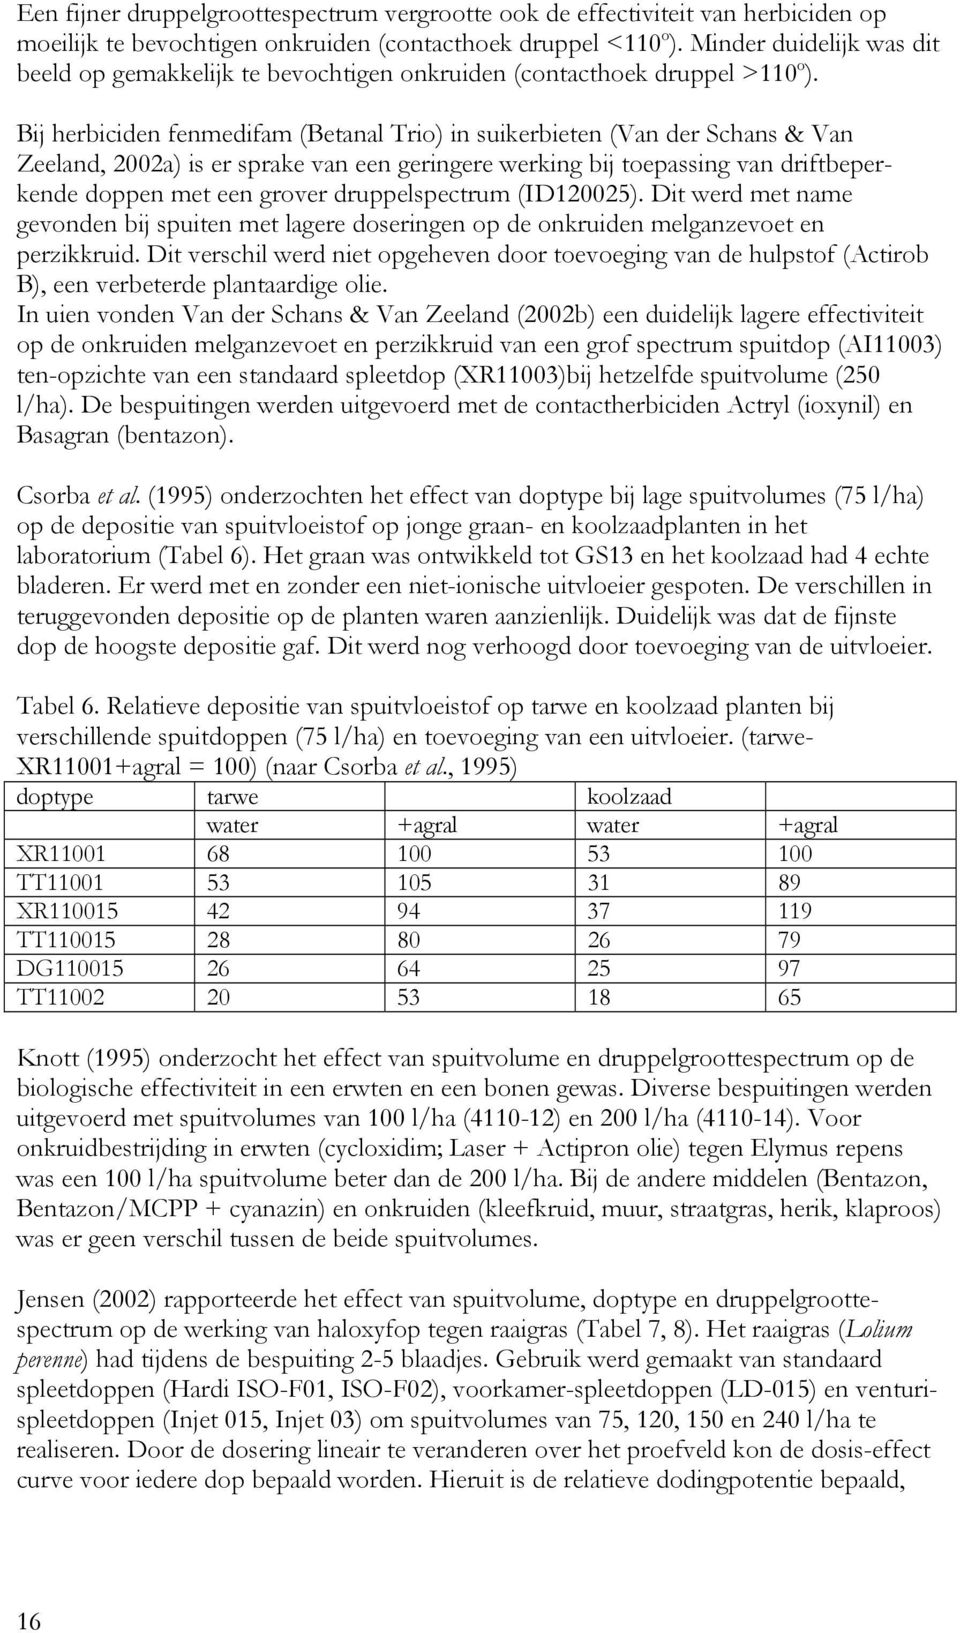 Bij herbiciden fenmedifam (Betanal Trio) in suikerbieten (Van der Schans & Van Zeeland, 2002a) is er sprake van een geringere werking bij toepassing van driftbeperkende doppen met een grover